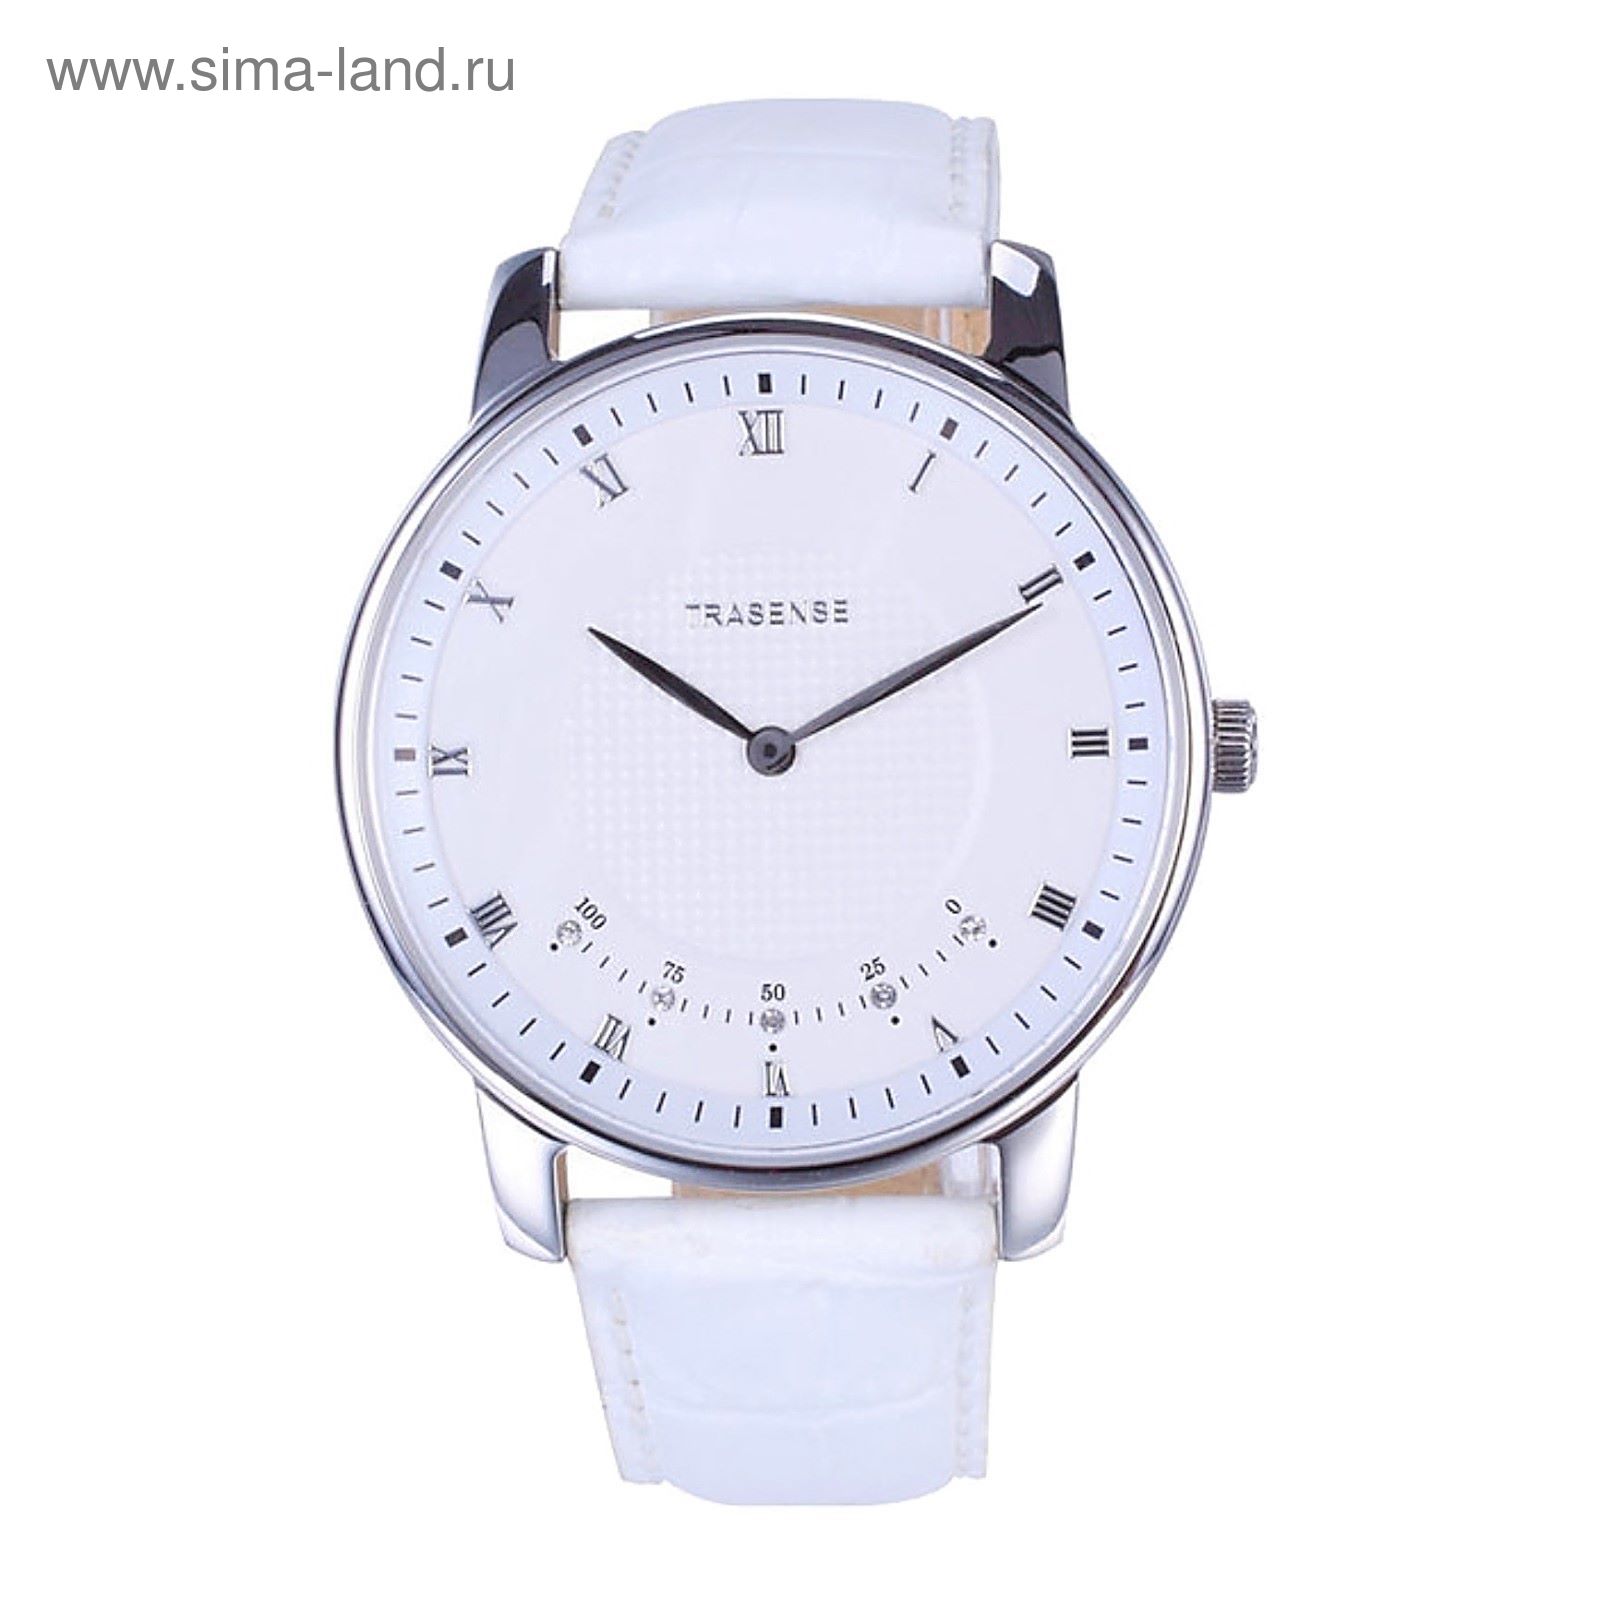 Умные часы Trasense TS-H01, белые